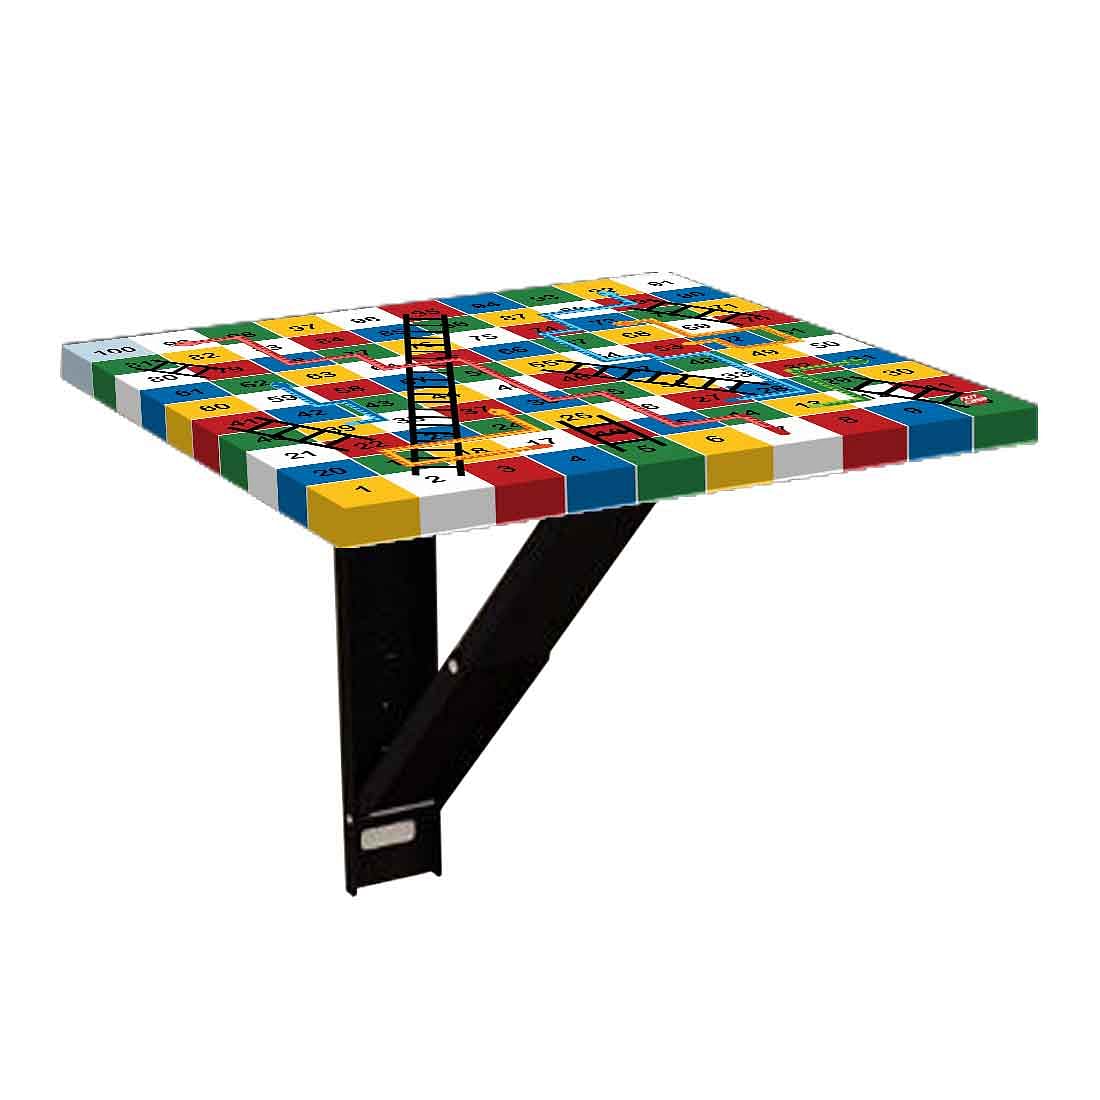 Bedside Table for Bedroom  - Snake Ladder Multicolor Nutcase